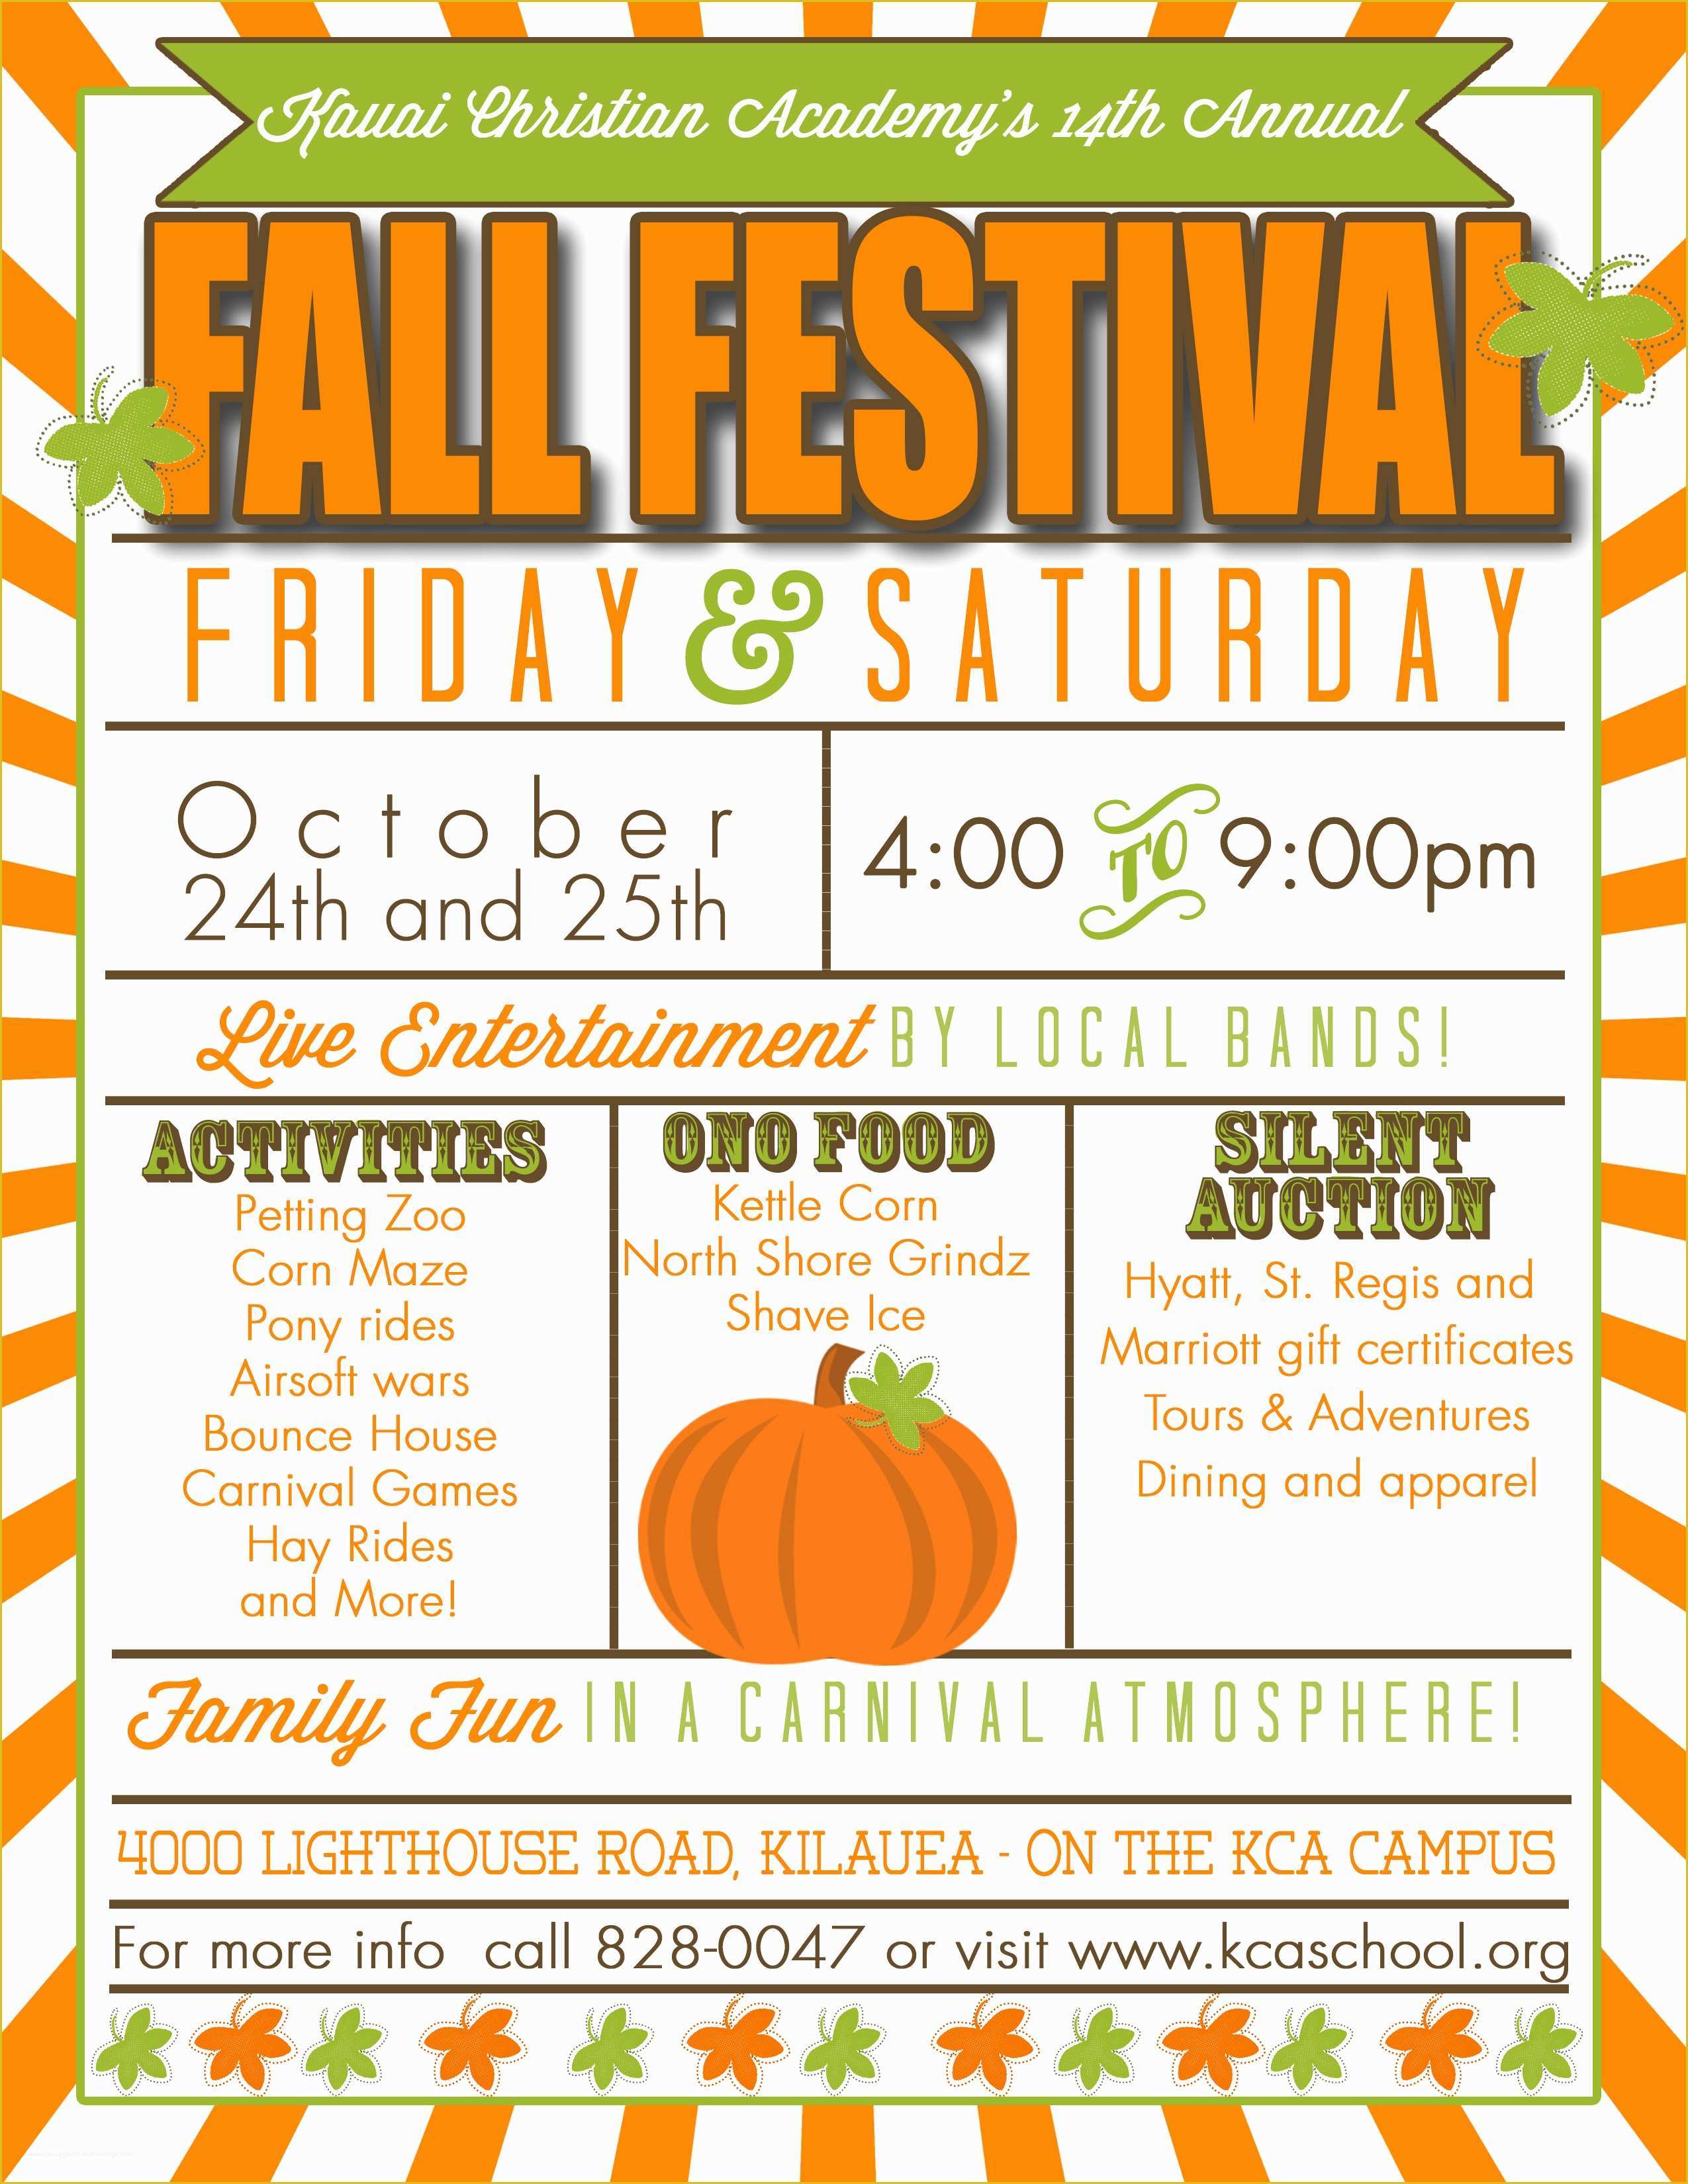 Free Printable Fall Festival Flyer Templates Of Kauai Christian Academy S 14th Annual Fall Festival